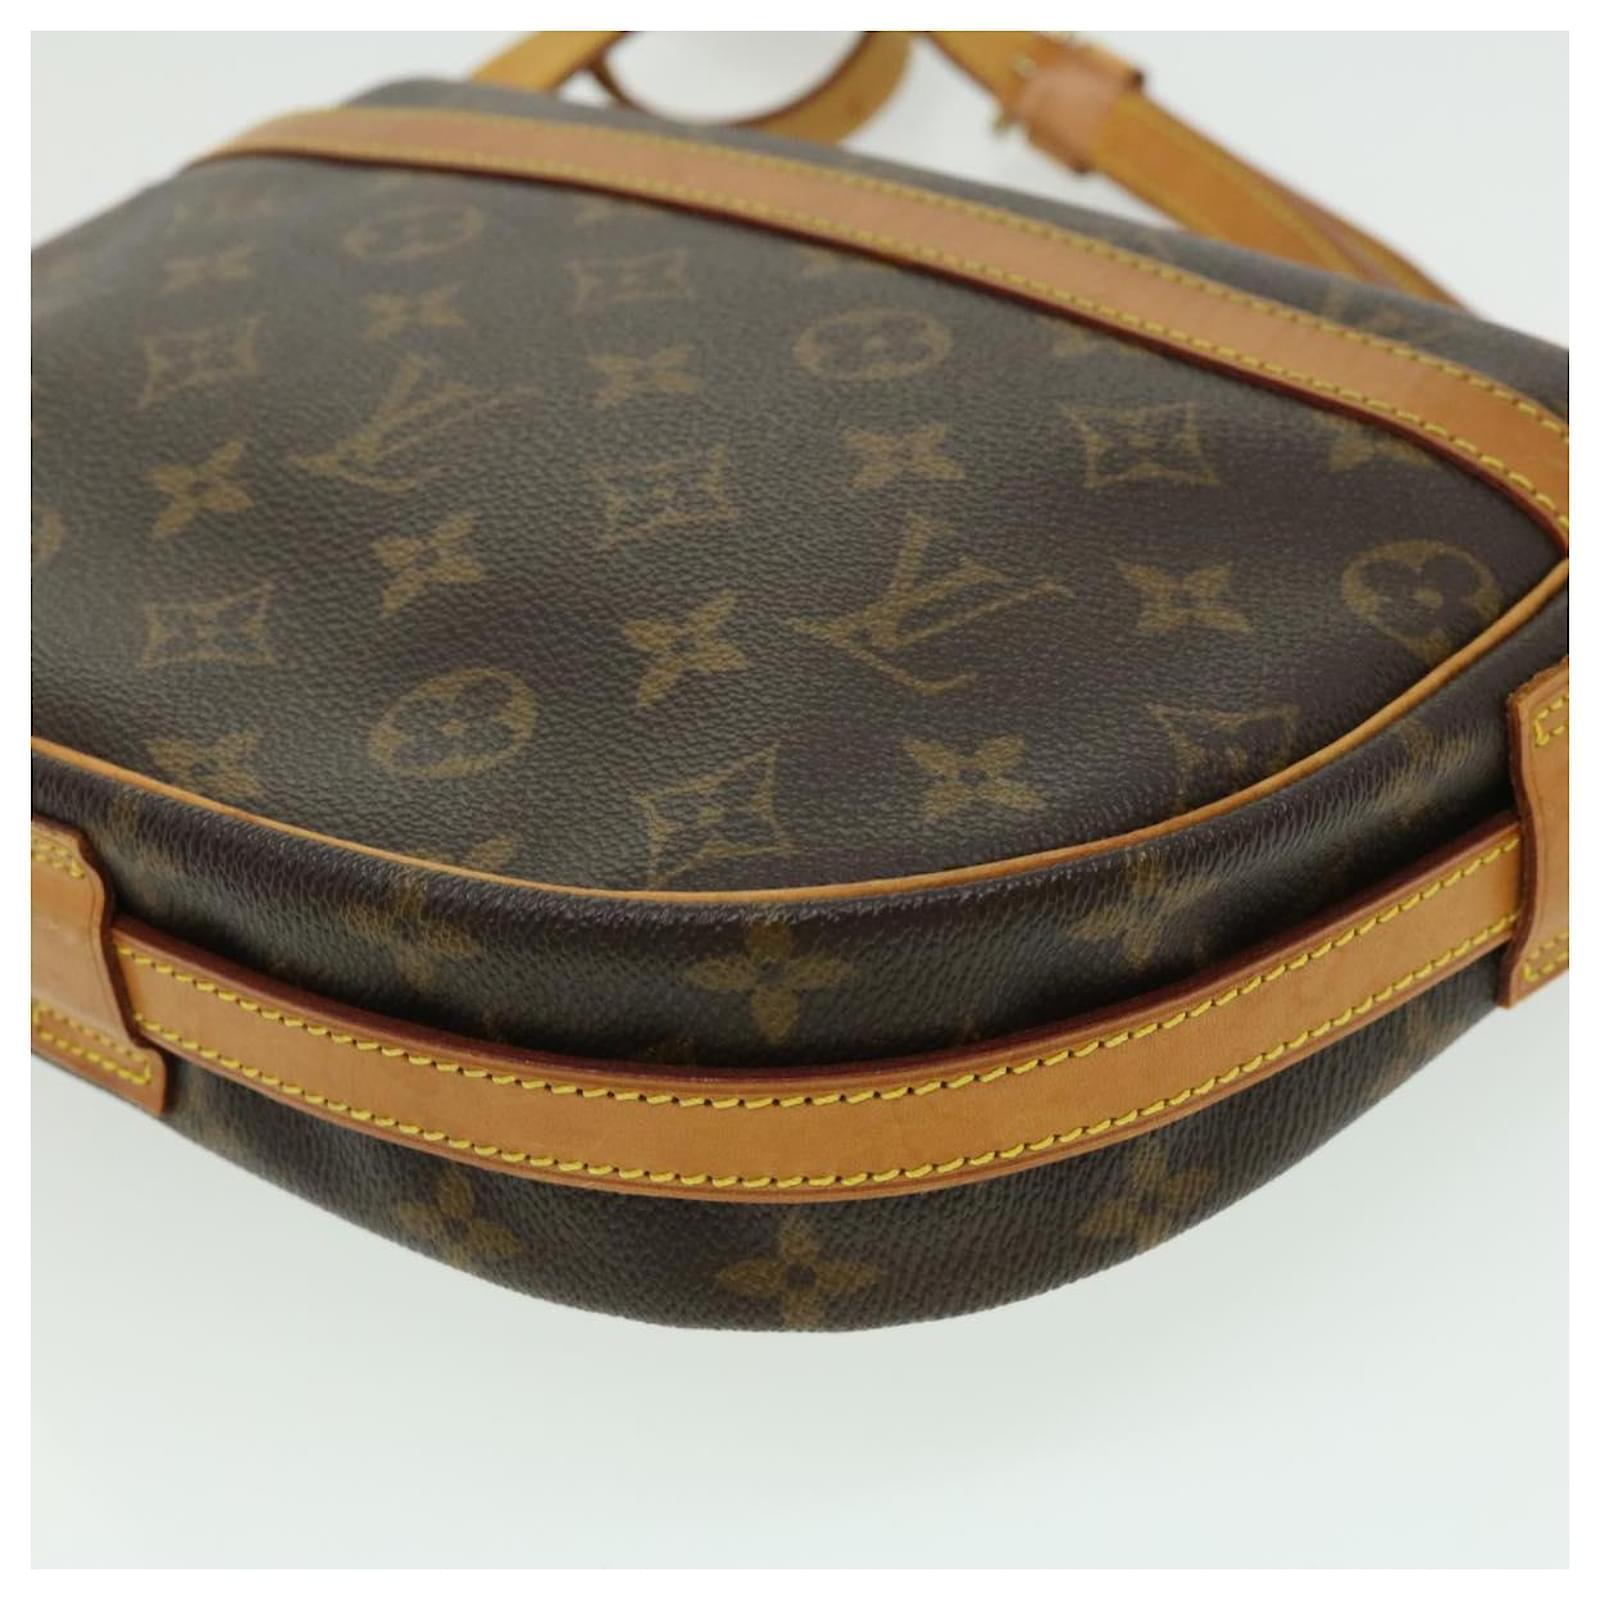 Authentic Louis Vuitton Monogram Jeune Fille MM Shoulder Bag M51226 Used F/S